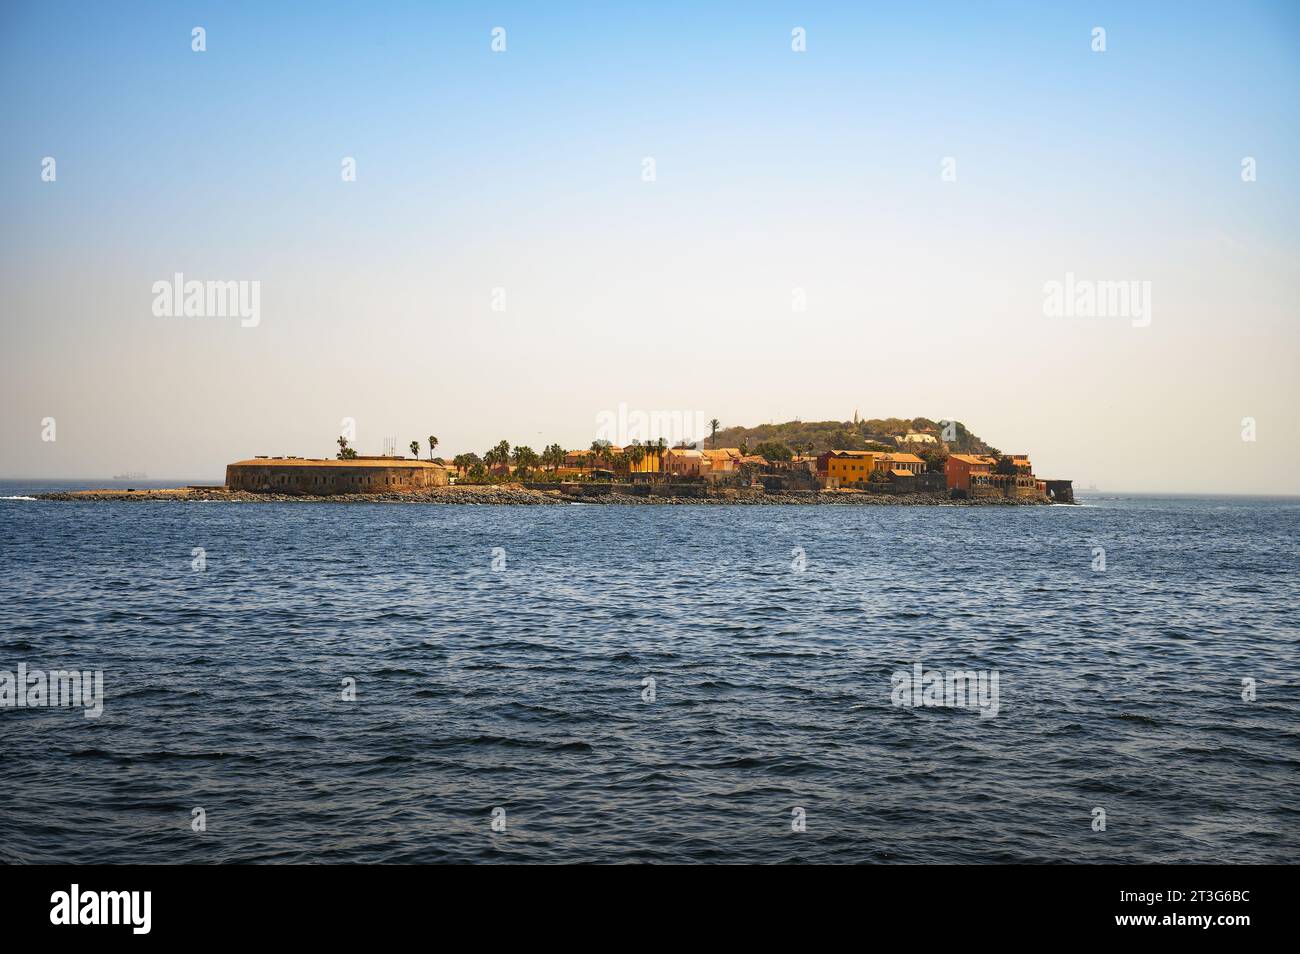 Île de Gorée près de Dakar, Sénégal, Afrique de l'Ouest, vue d'un bateau Banque D'Images